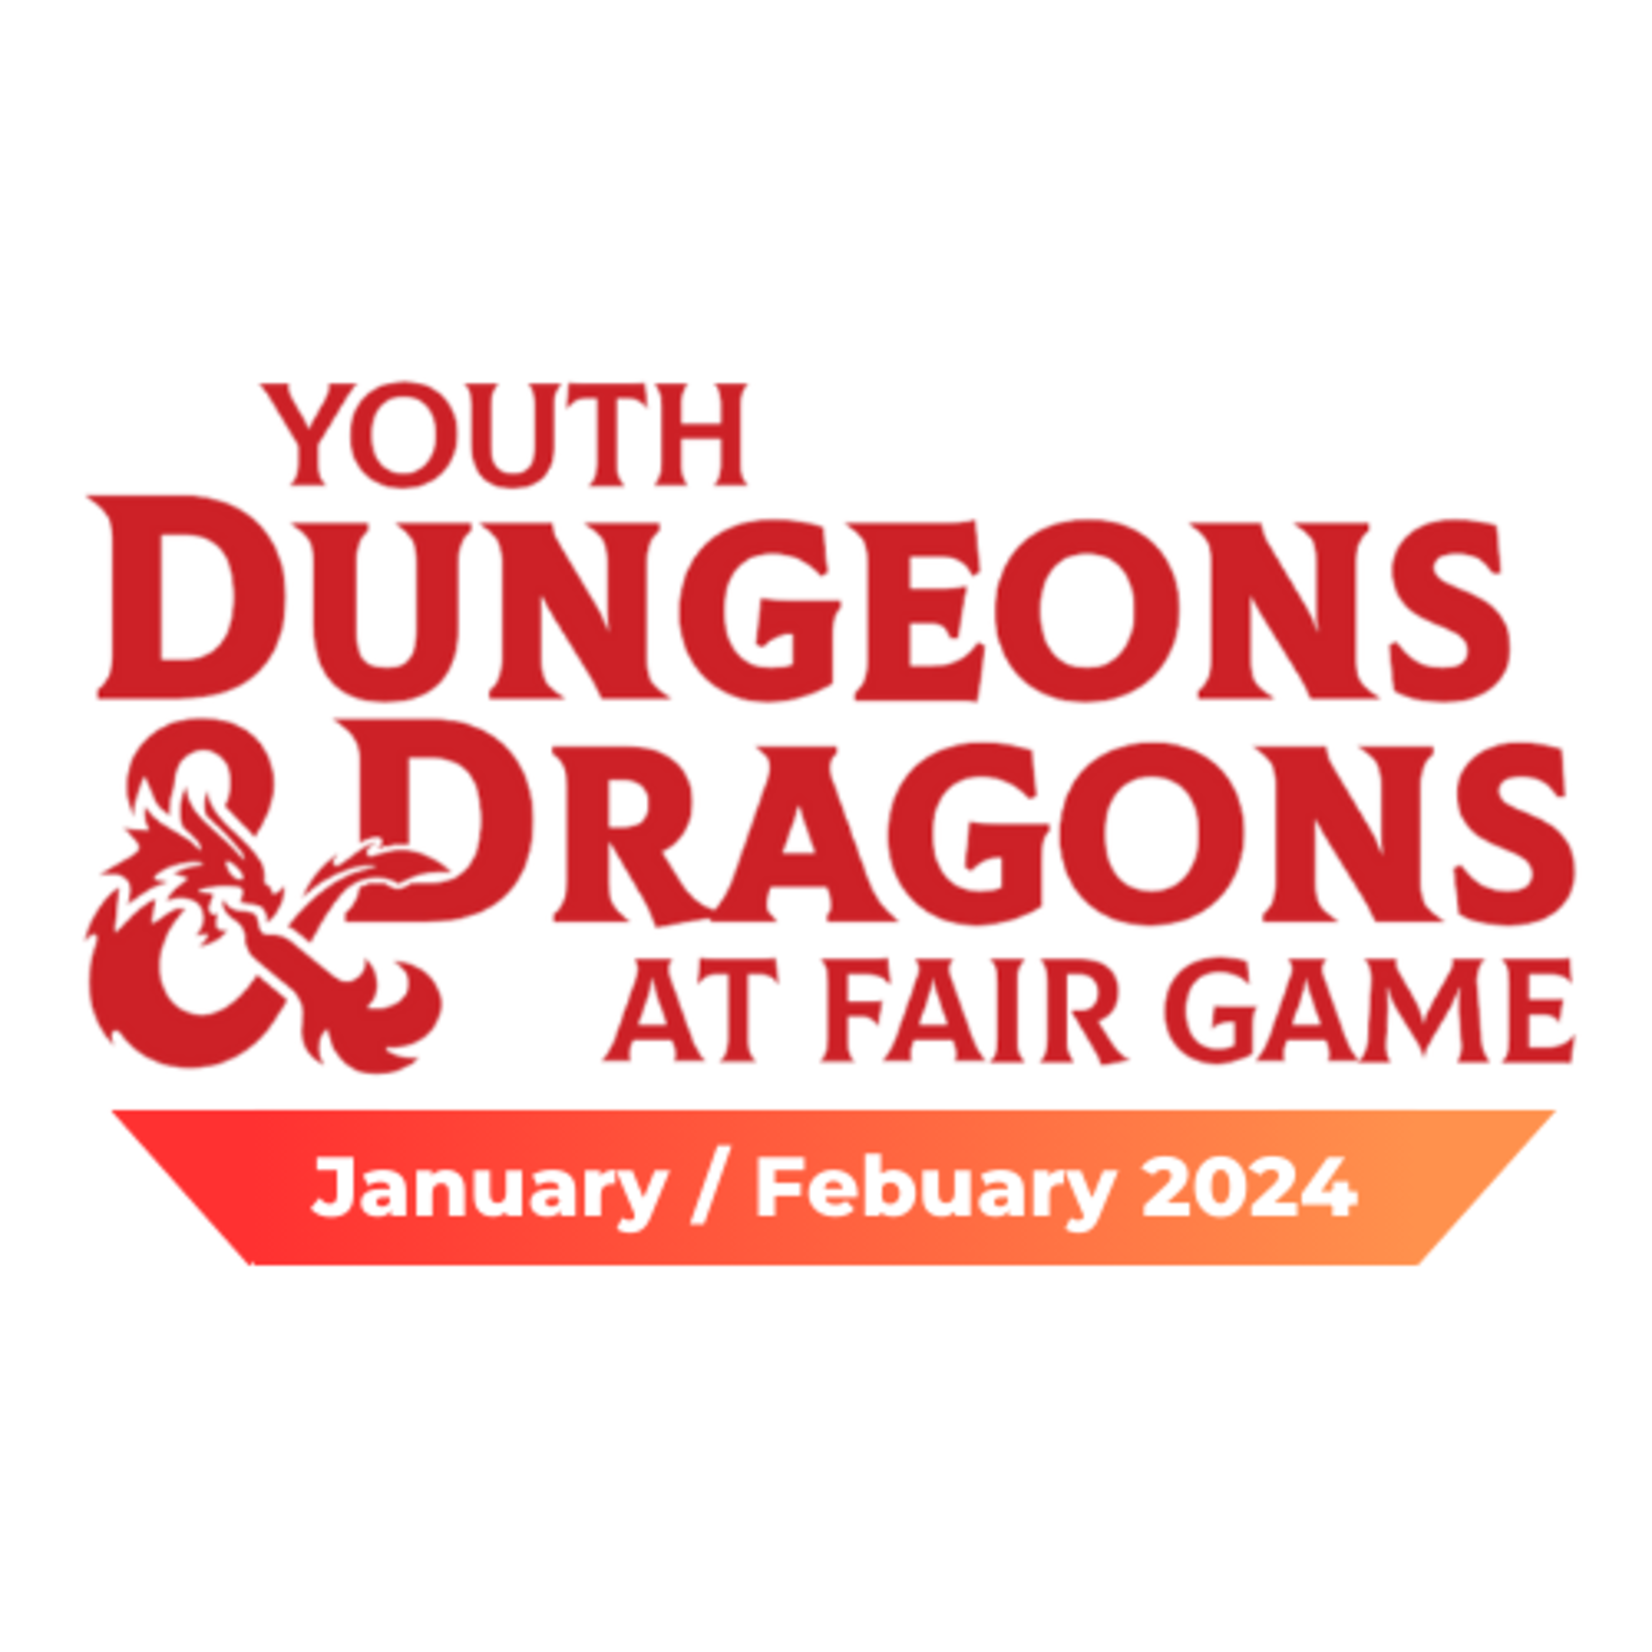 Fair Game YDND Jan/Feb 2024: Friday - Group LF1 La Grange 4-6 PM CST (Ages 10-15)